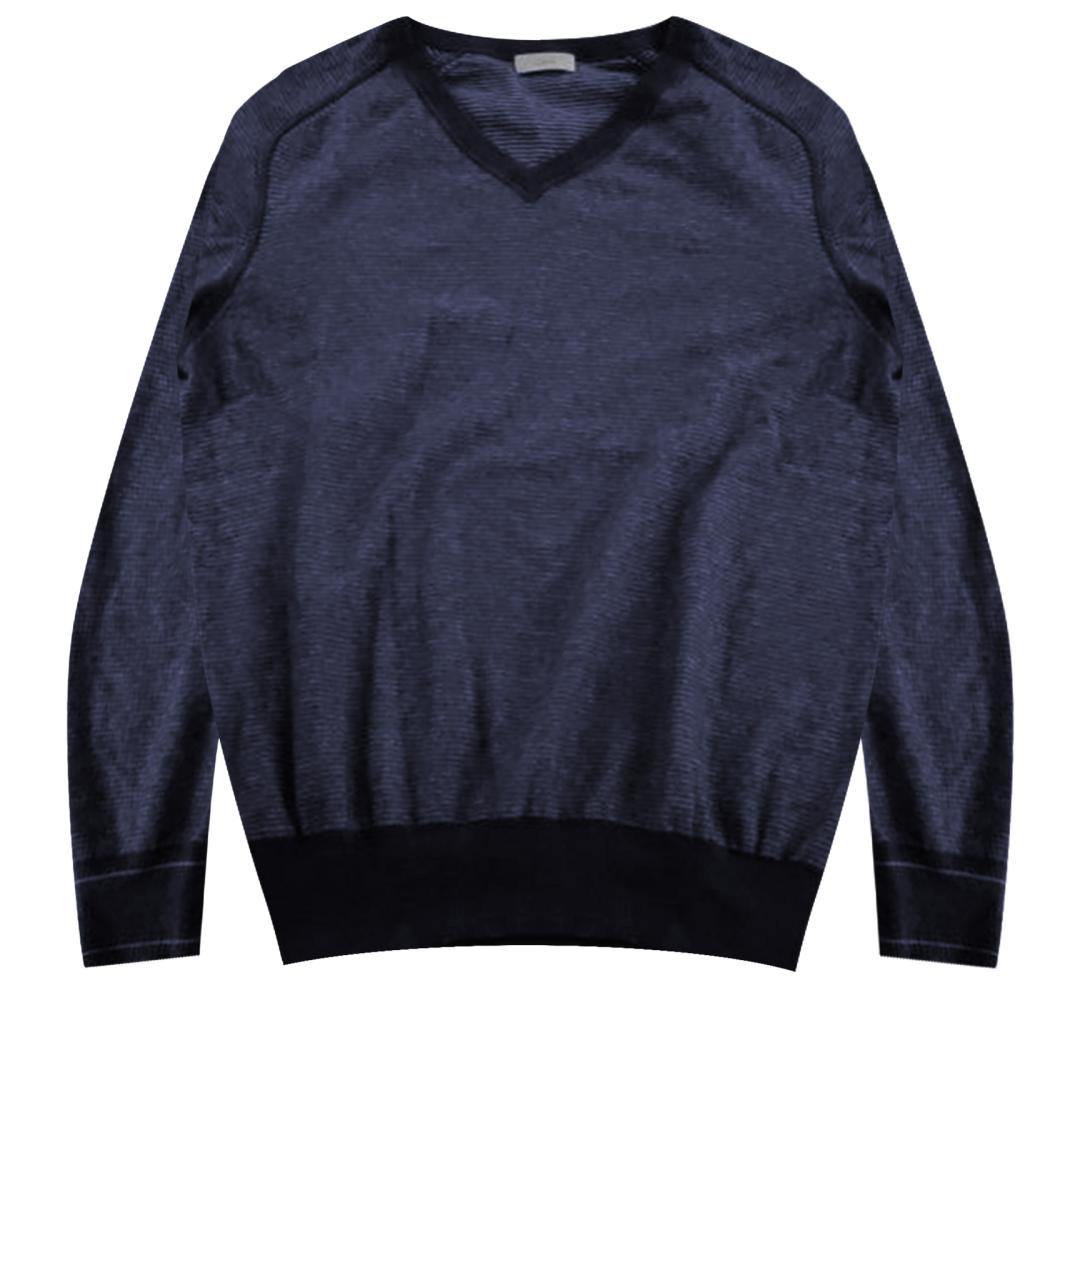 MALO Синий кашемировый джемпер / свитер, фото 1